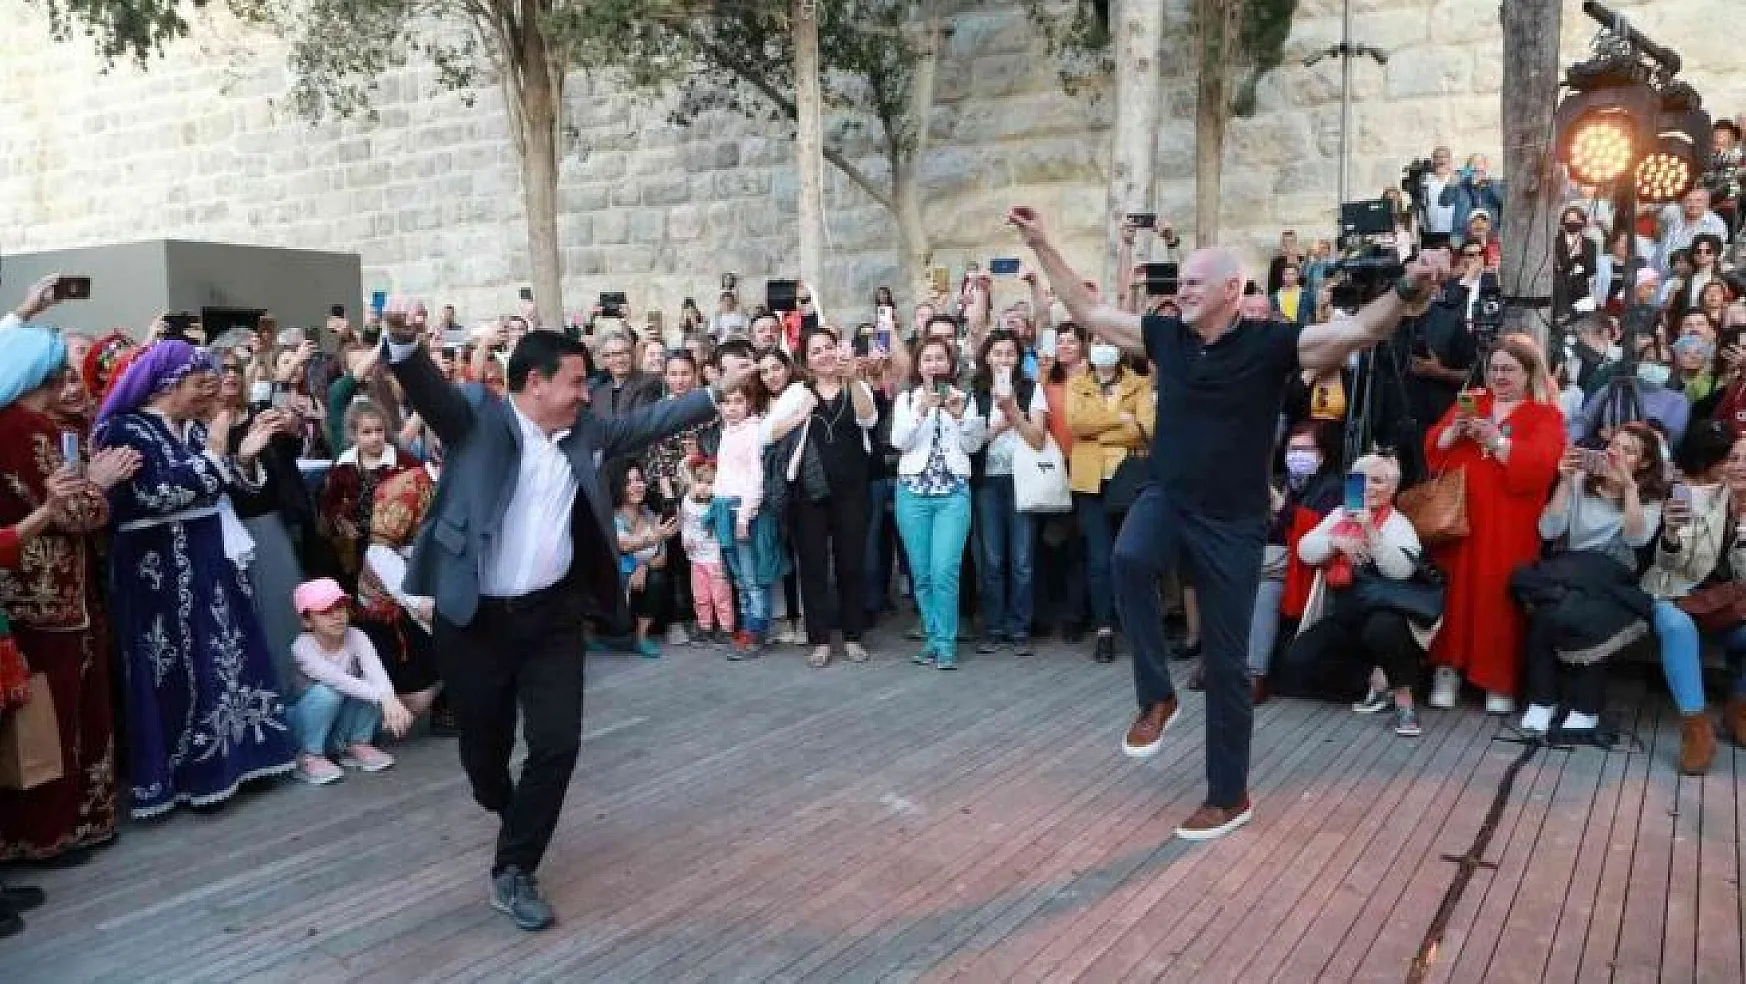 Yunanistan eski Başbakanı Papandreou sirtakiyi bırakıp, Başkan Aras'la zeybek oynadı